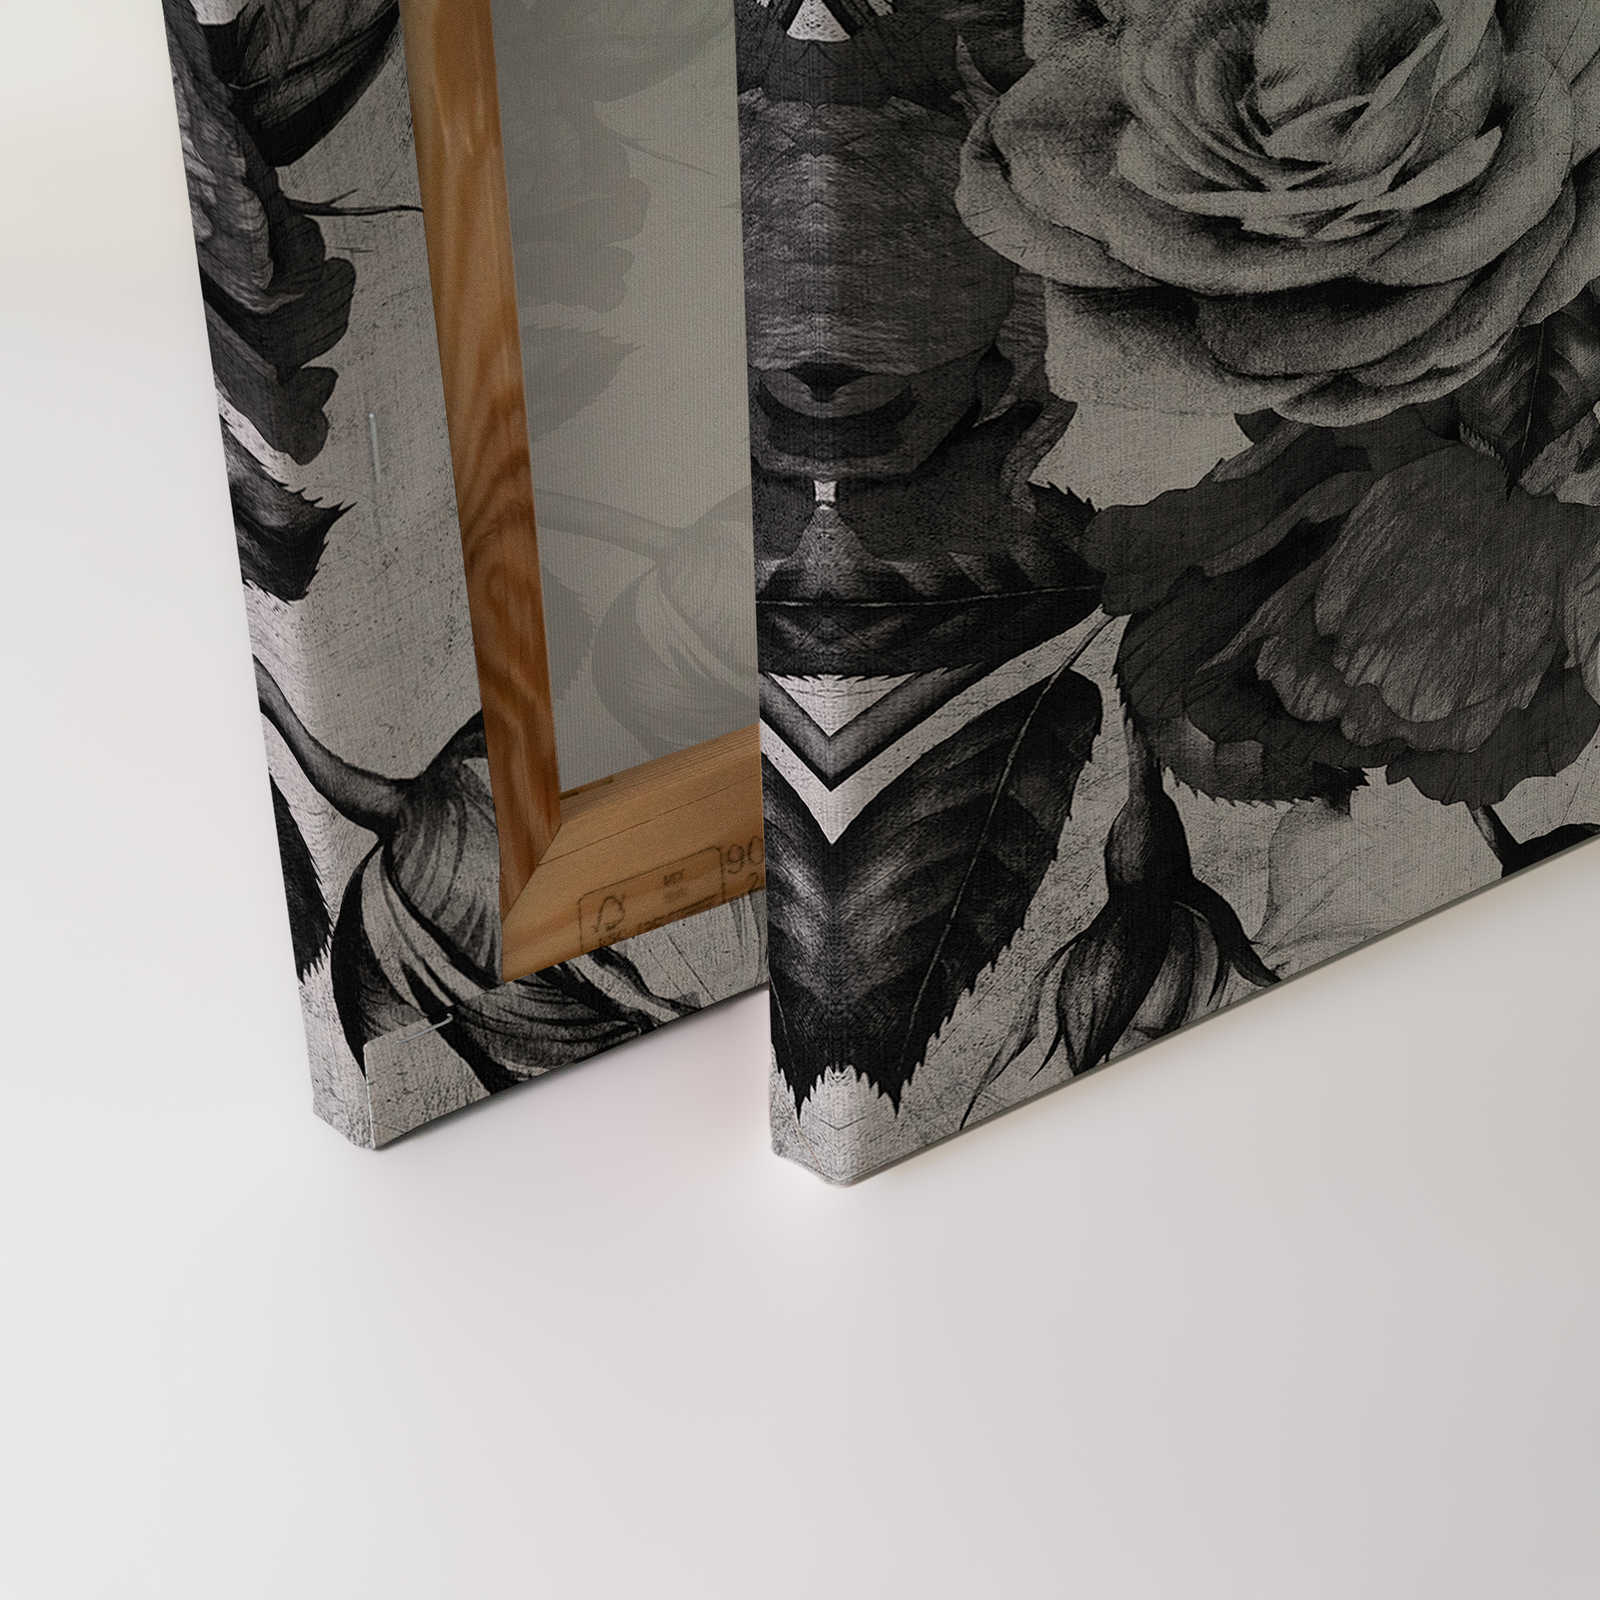             Spaanse roos 1 - Rozen canvas schilderij met zwarte en witte bloemen - 0,90 m x 0,60 m
        